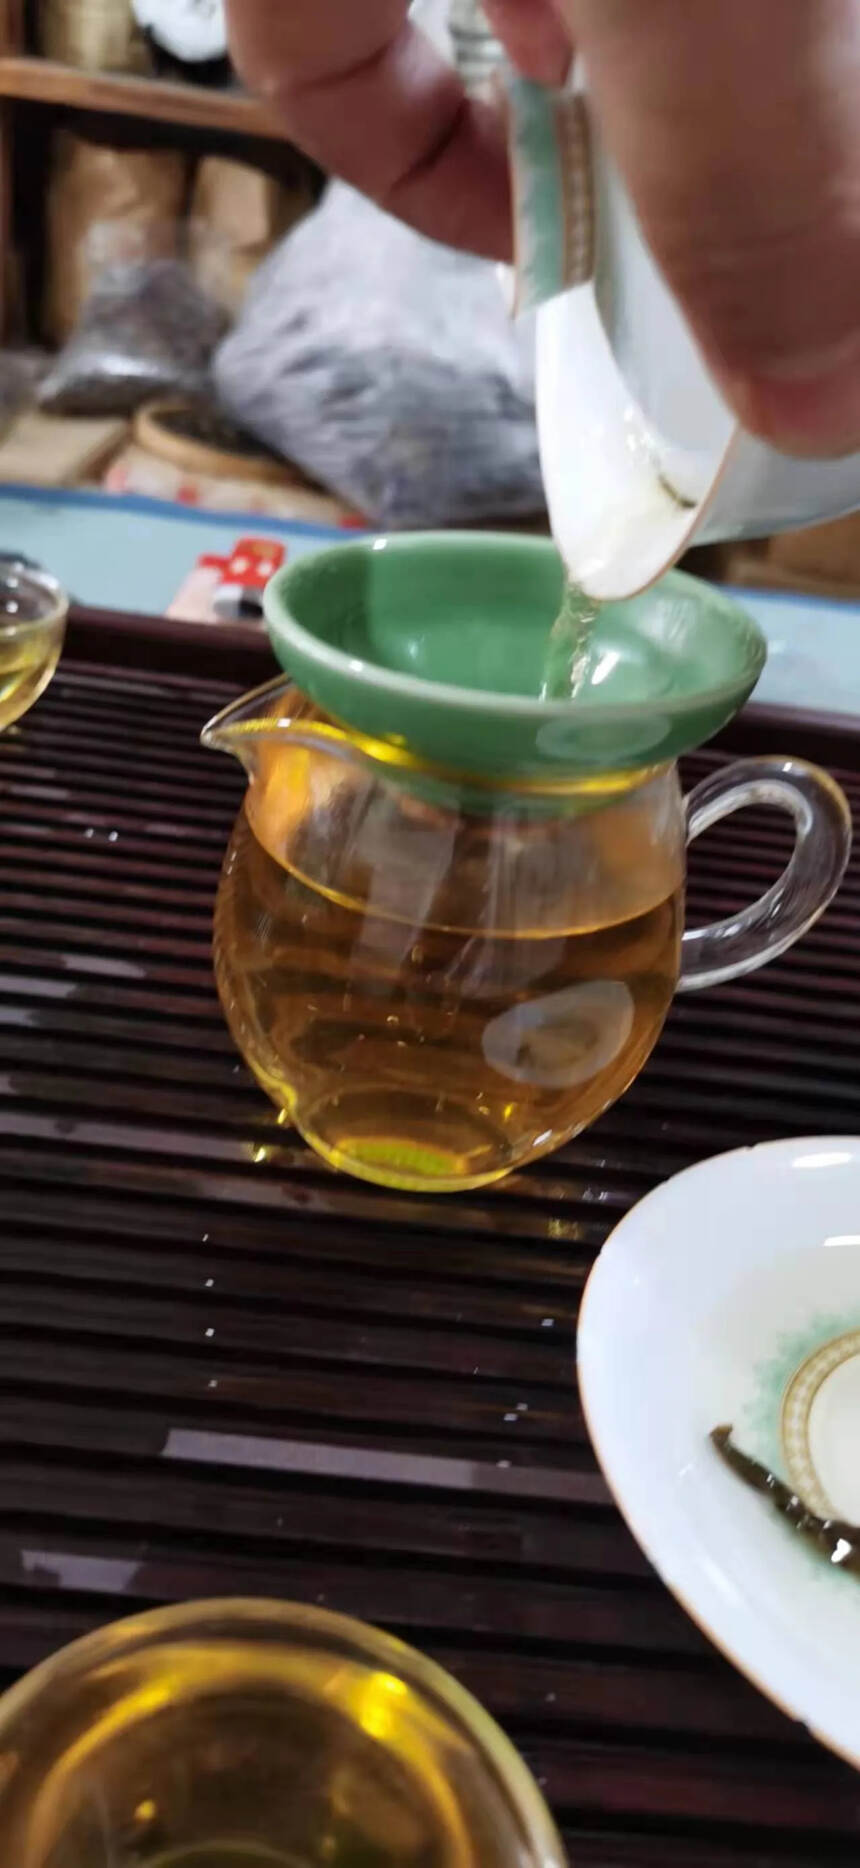 2014年麻黑古树散茶。#广州头条# #普洱茶# #